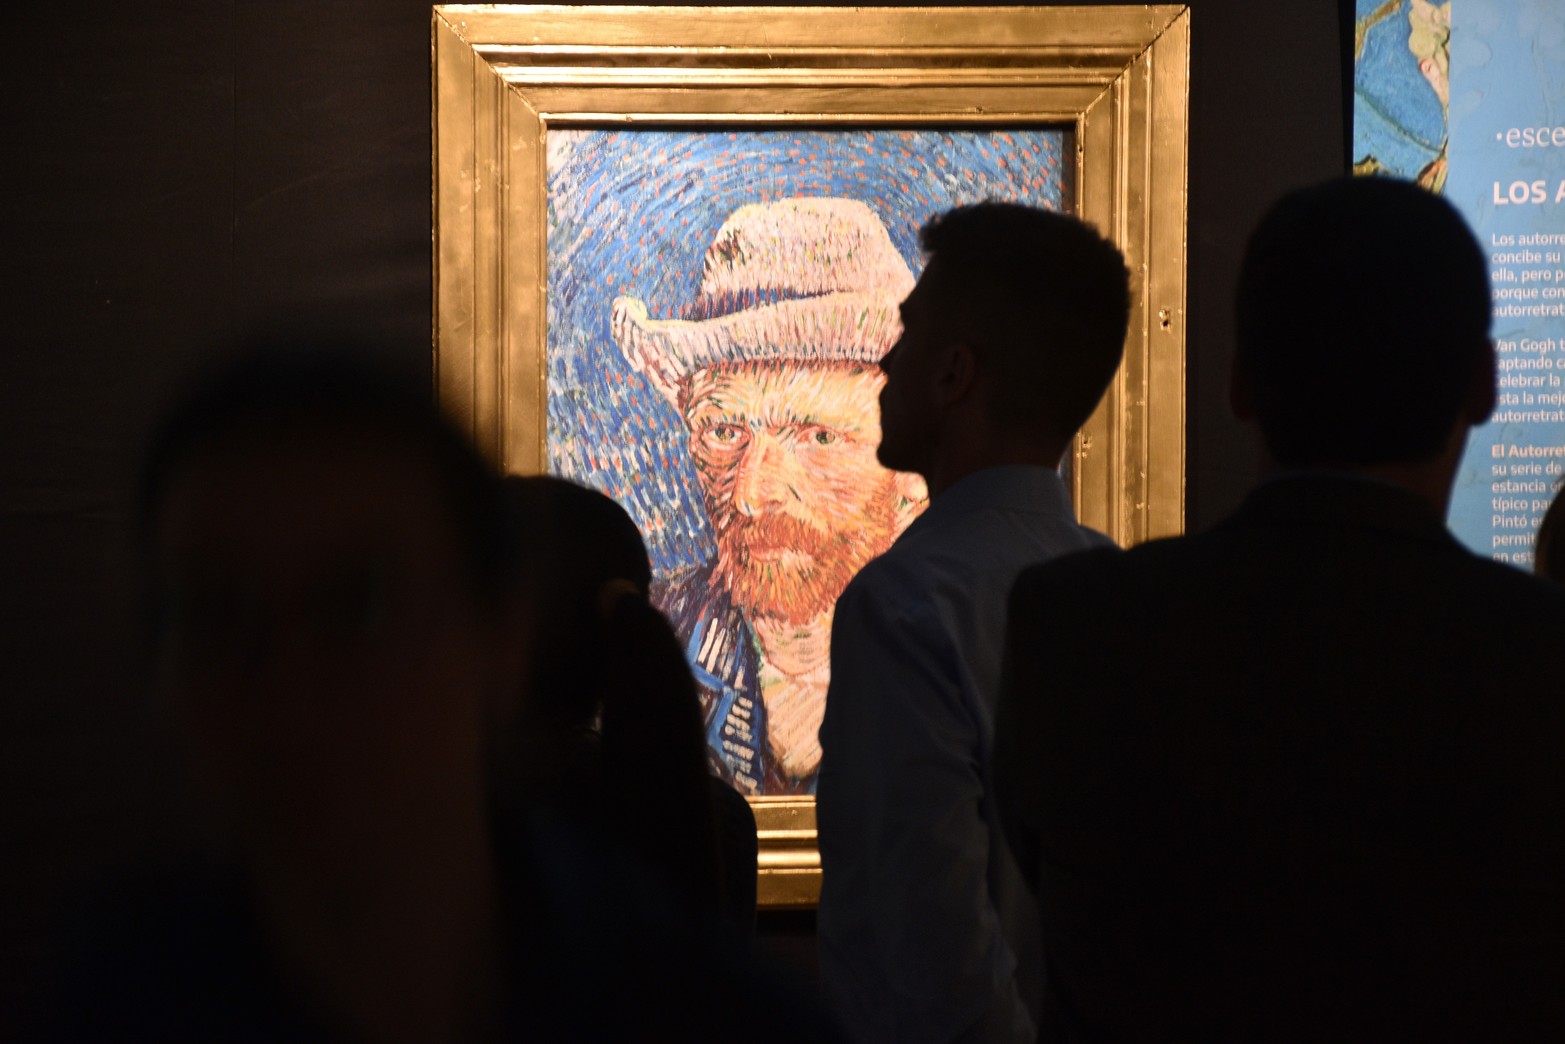 Van Gogh experiencia de arte inmersa. La muestra abrirá al público el viernes 30 de septiembre y permanecerá hasta el domingo 30 de octubre. Se podrá visitar de domingos a jueves de 9 a 12:30 y de 16:30 a 20:30, y los viernes, sábados y feriados de 9 a 12:30 y de 16:30 a 21:30. Foto Flavio Raina